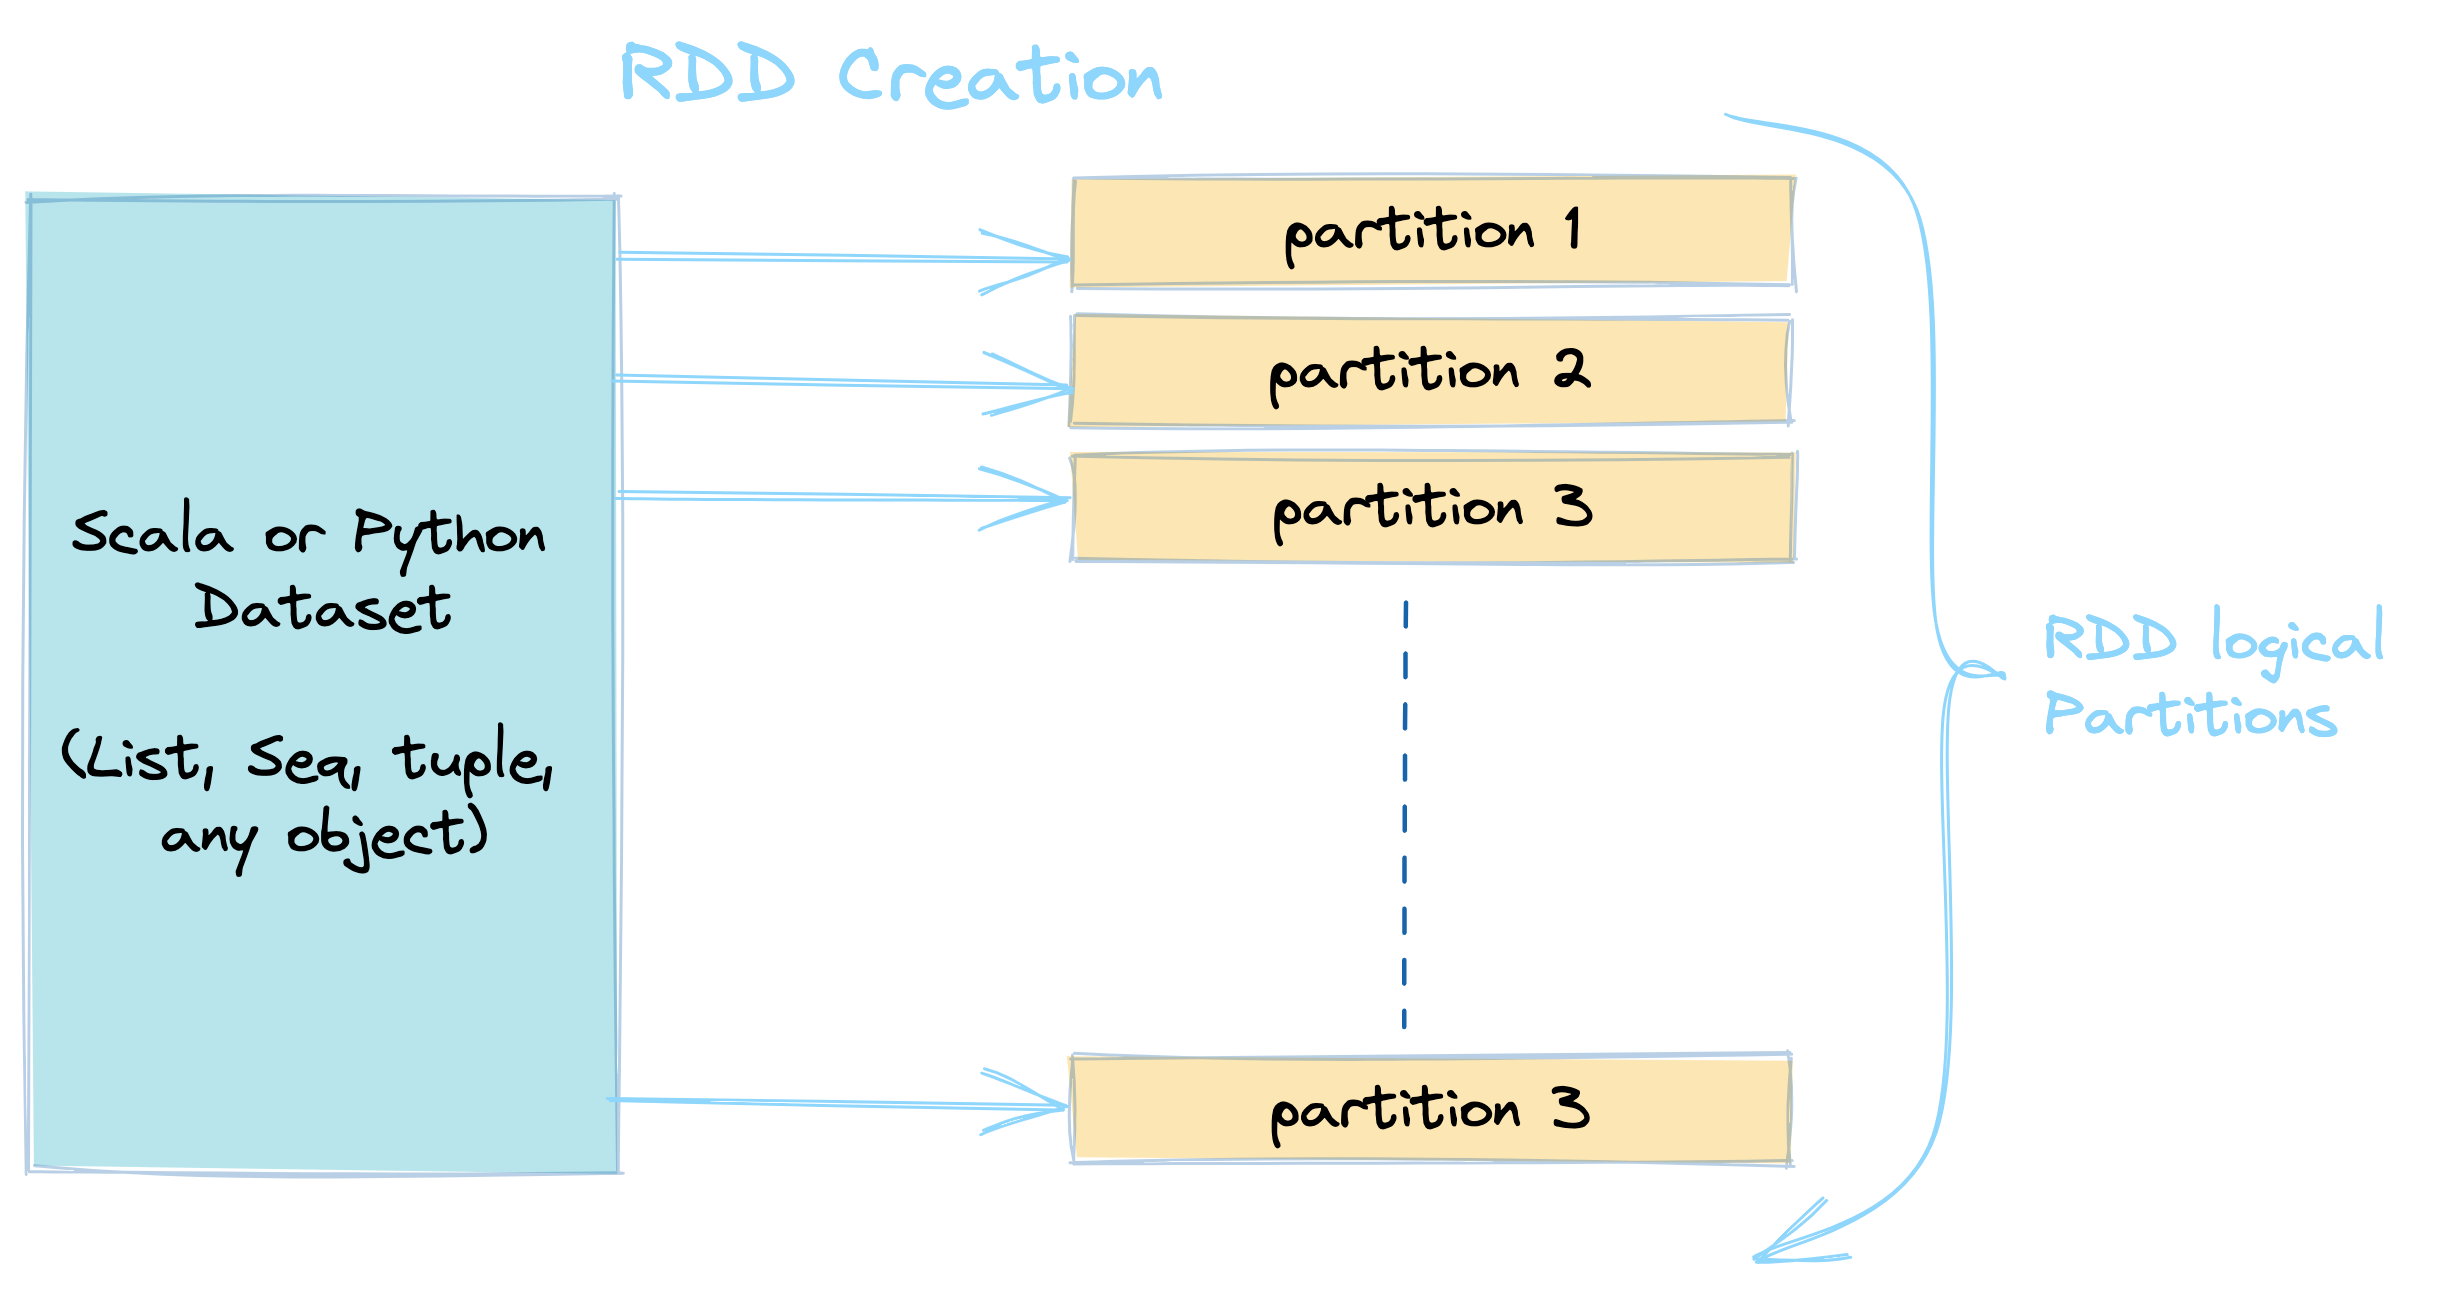 RDD Creation